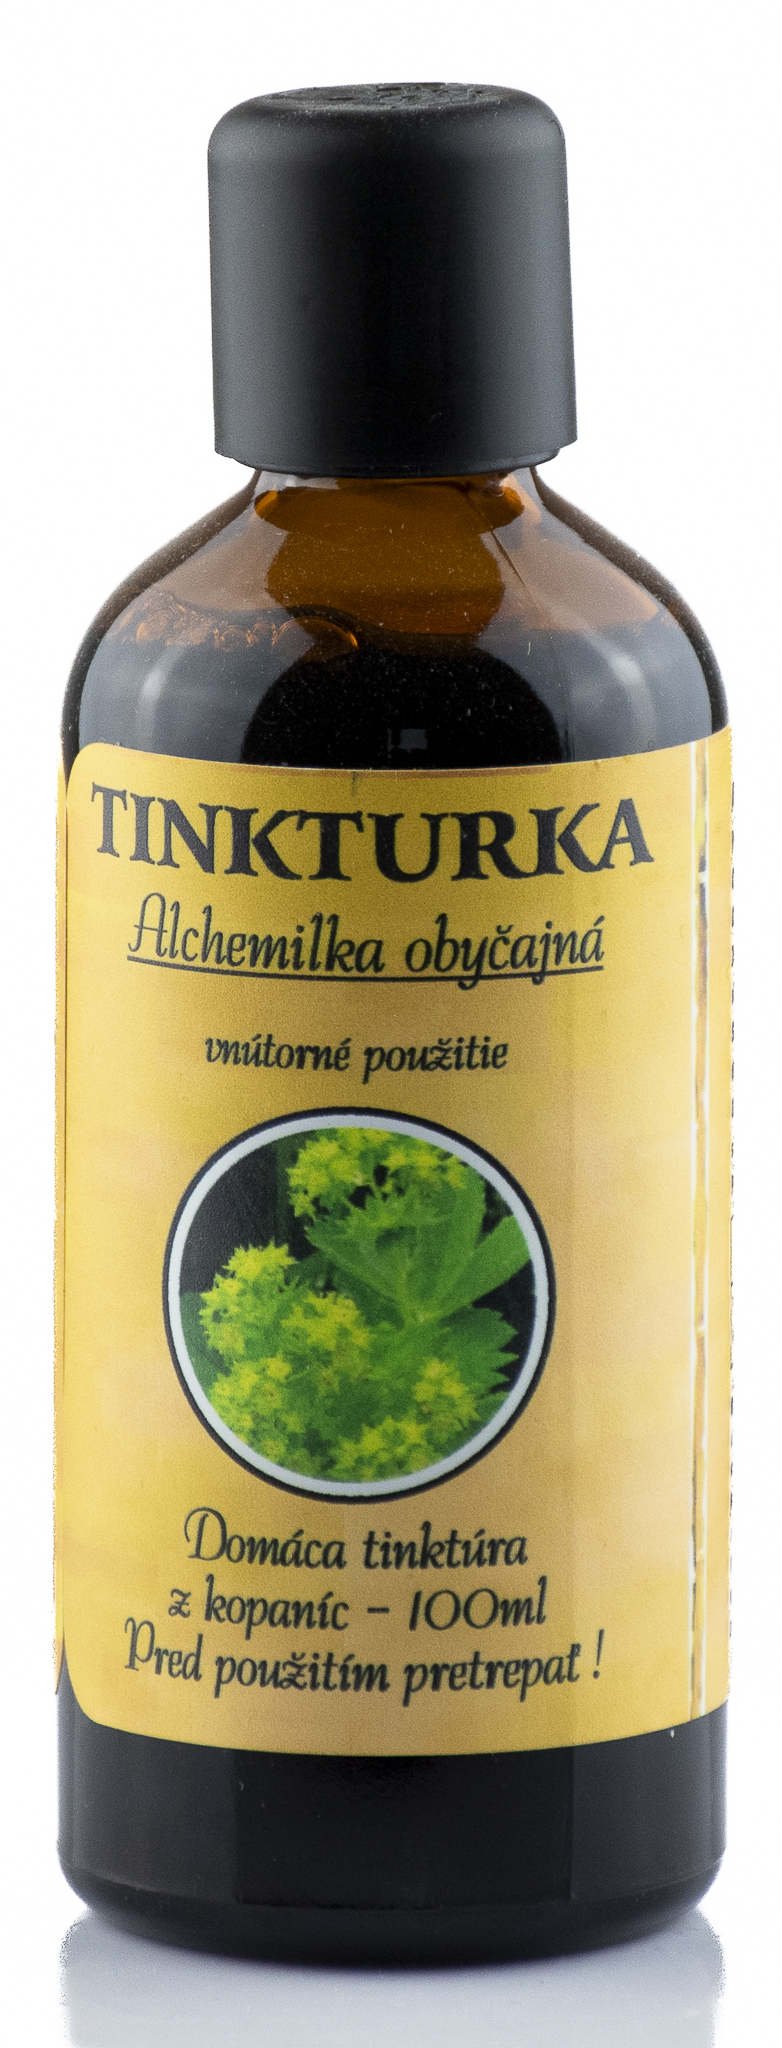 PANAKEIA TINKTURKA -  Alchemilka obyčajná 100ml Kusy: 1